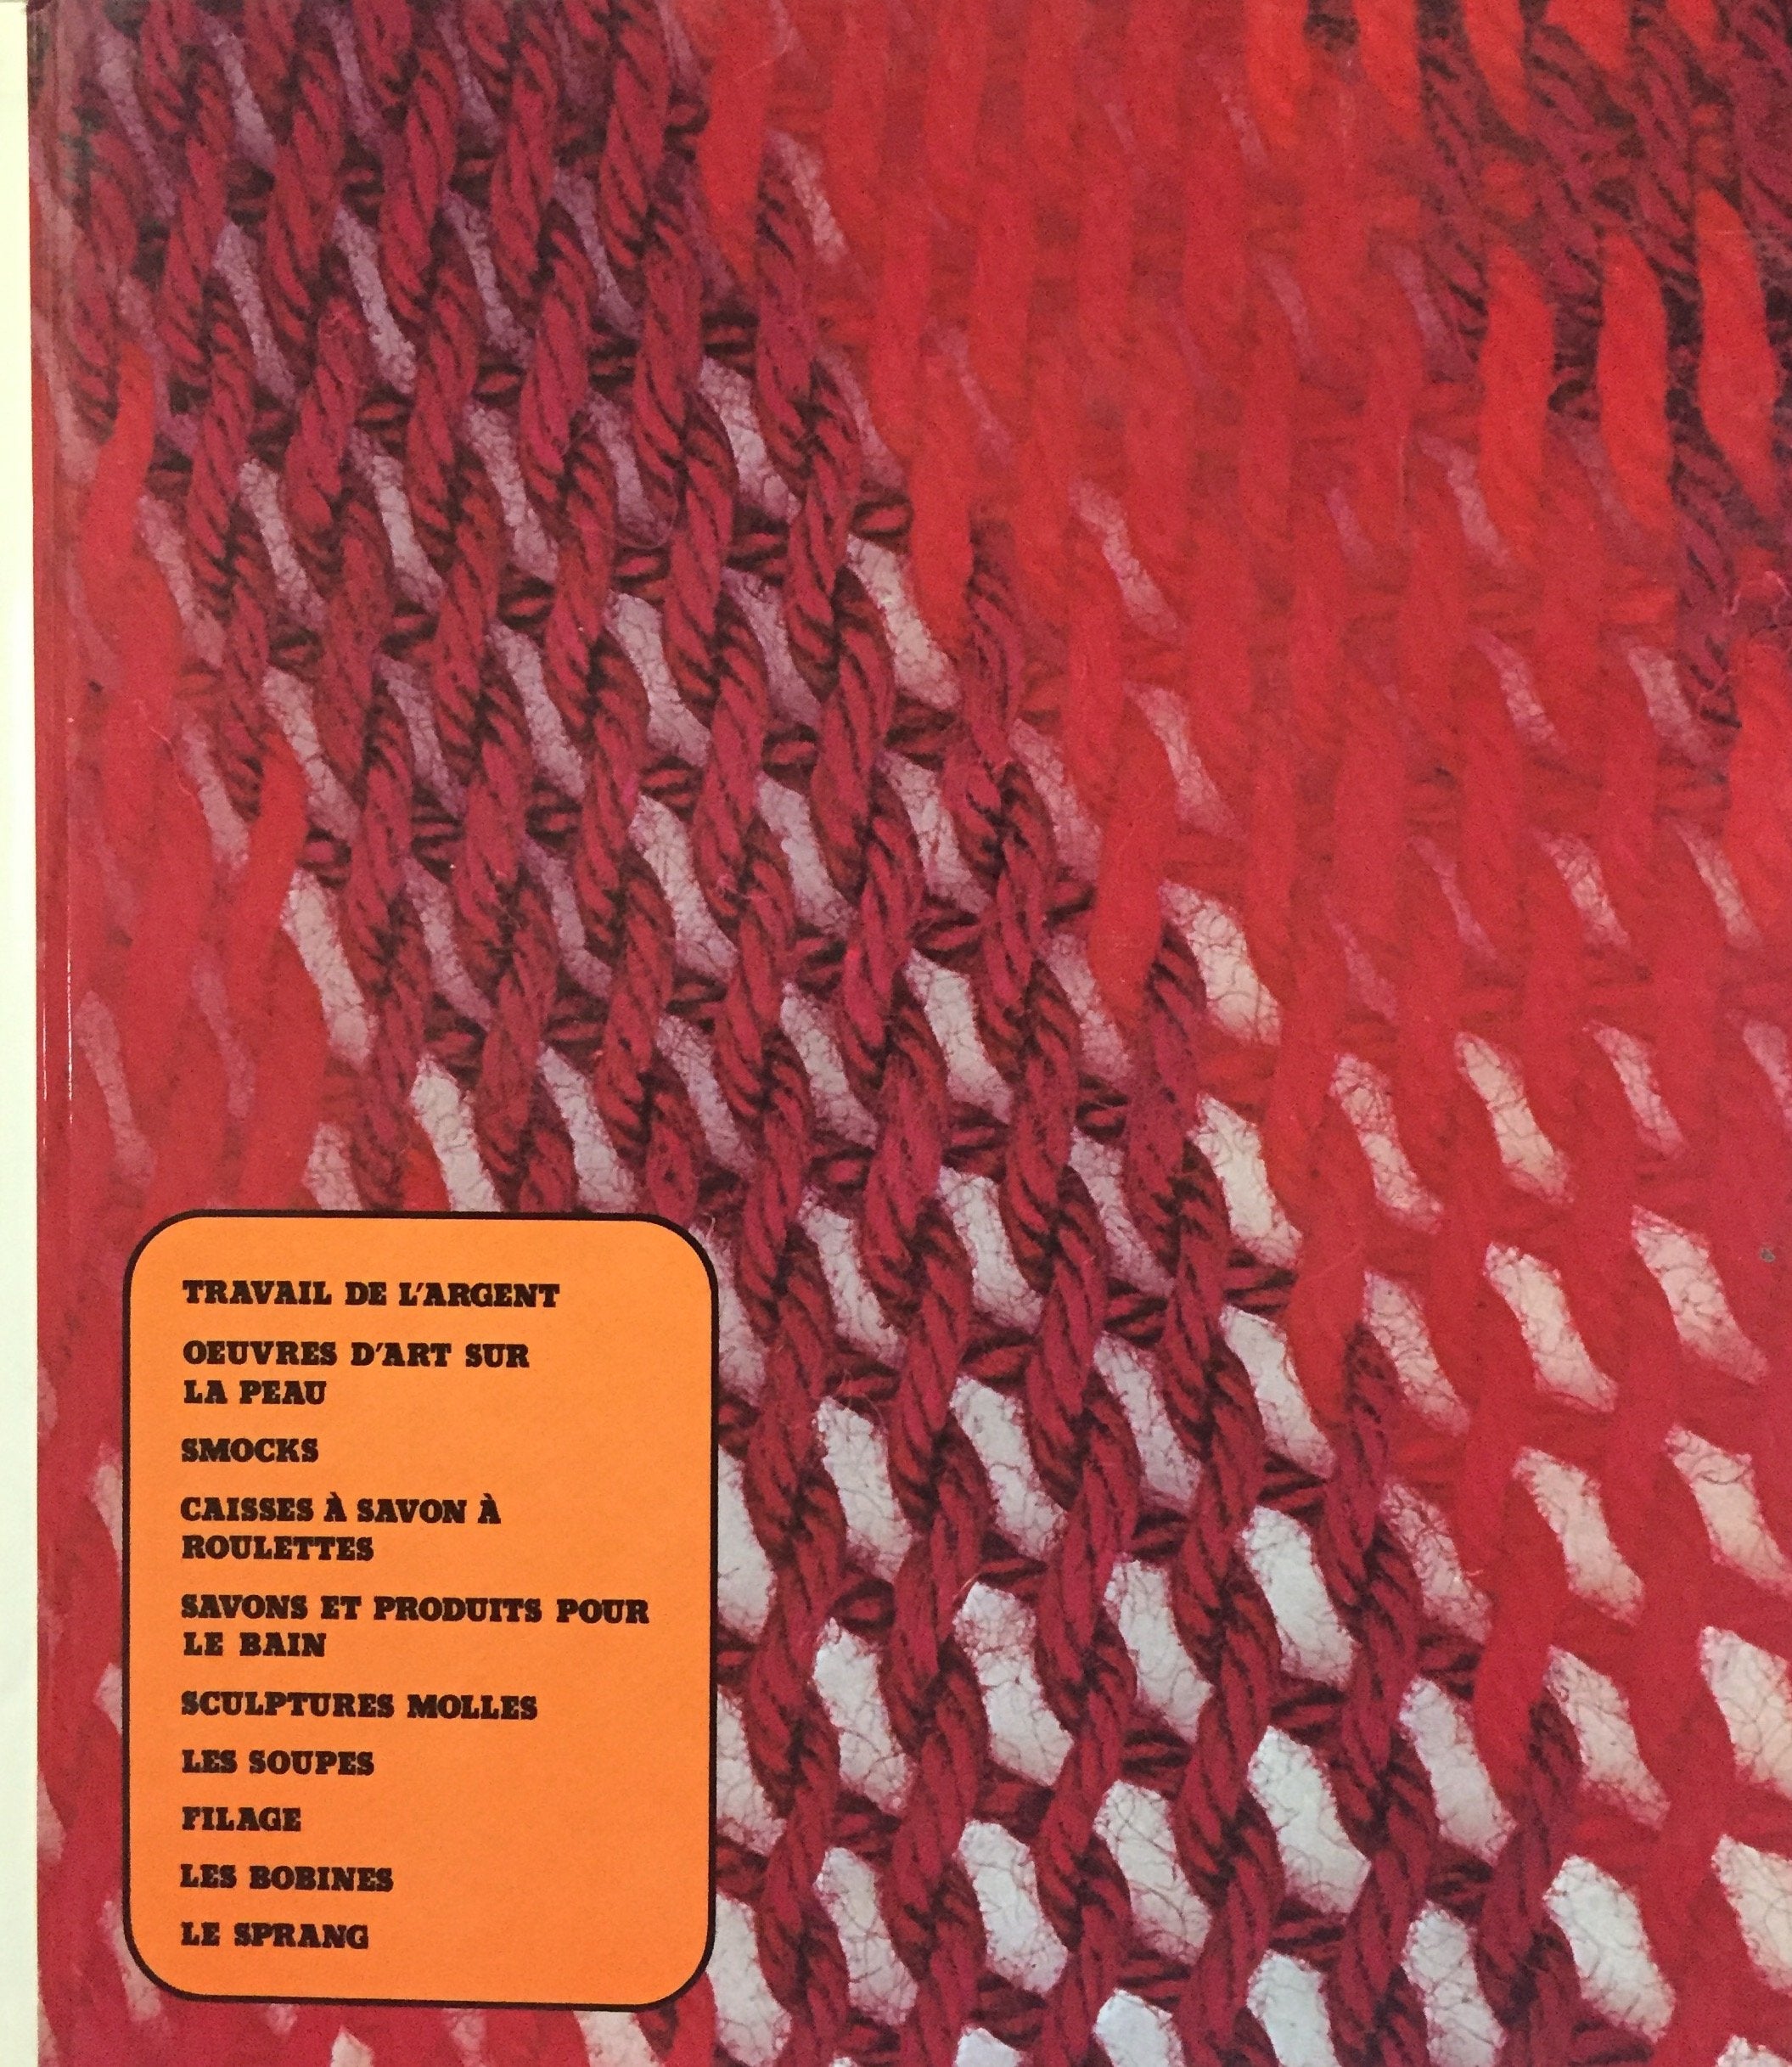 Livre ISBN  Artisanat et Loisirs : Travail de l'argent, oeuvres d'art sur la peau, smocks, caisses à savon à roulettes, savons et produits pour le bain, sculptures molles, les soupes, filage, les bobines, le sprang